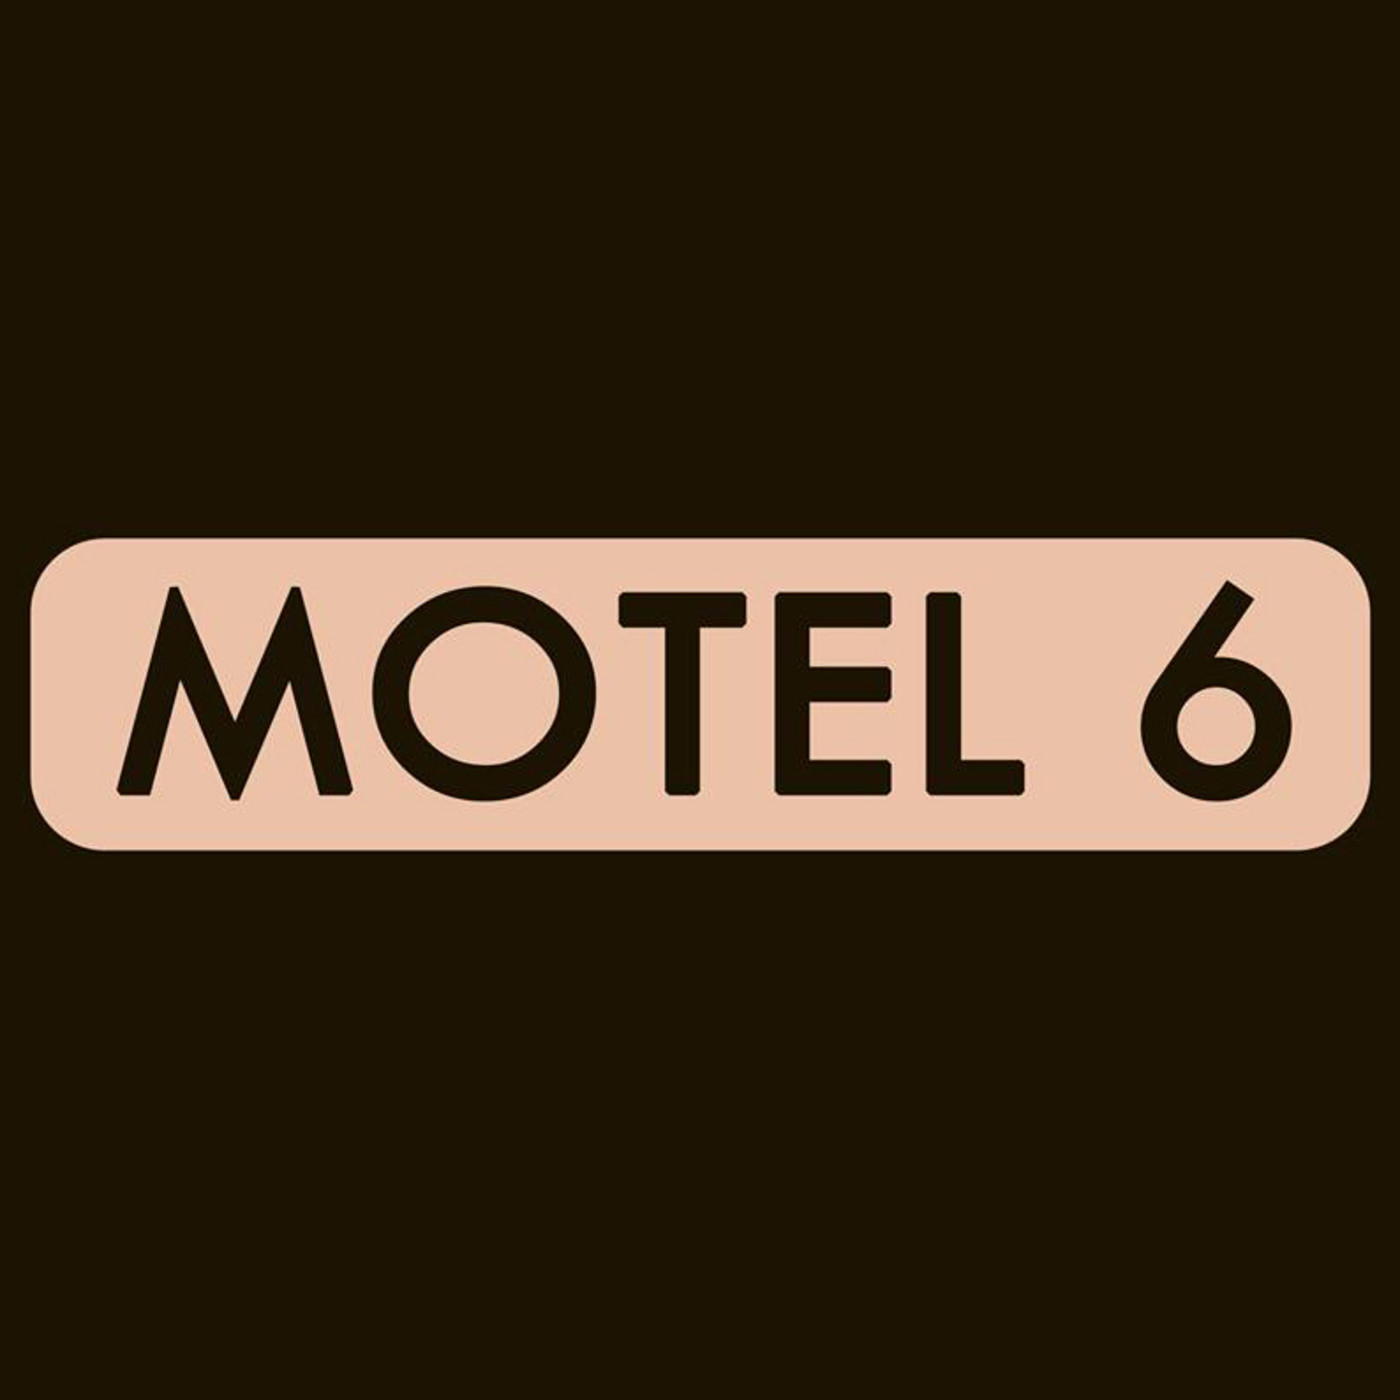 Motel 6 - 05x10 - OBRAS ABIERTAS ON TOUR